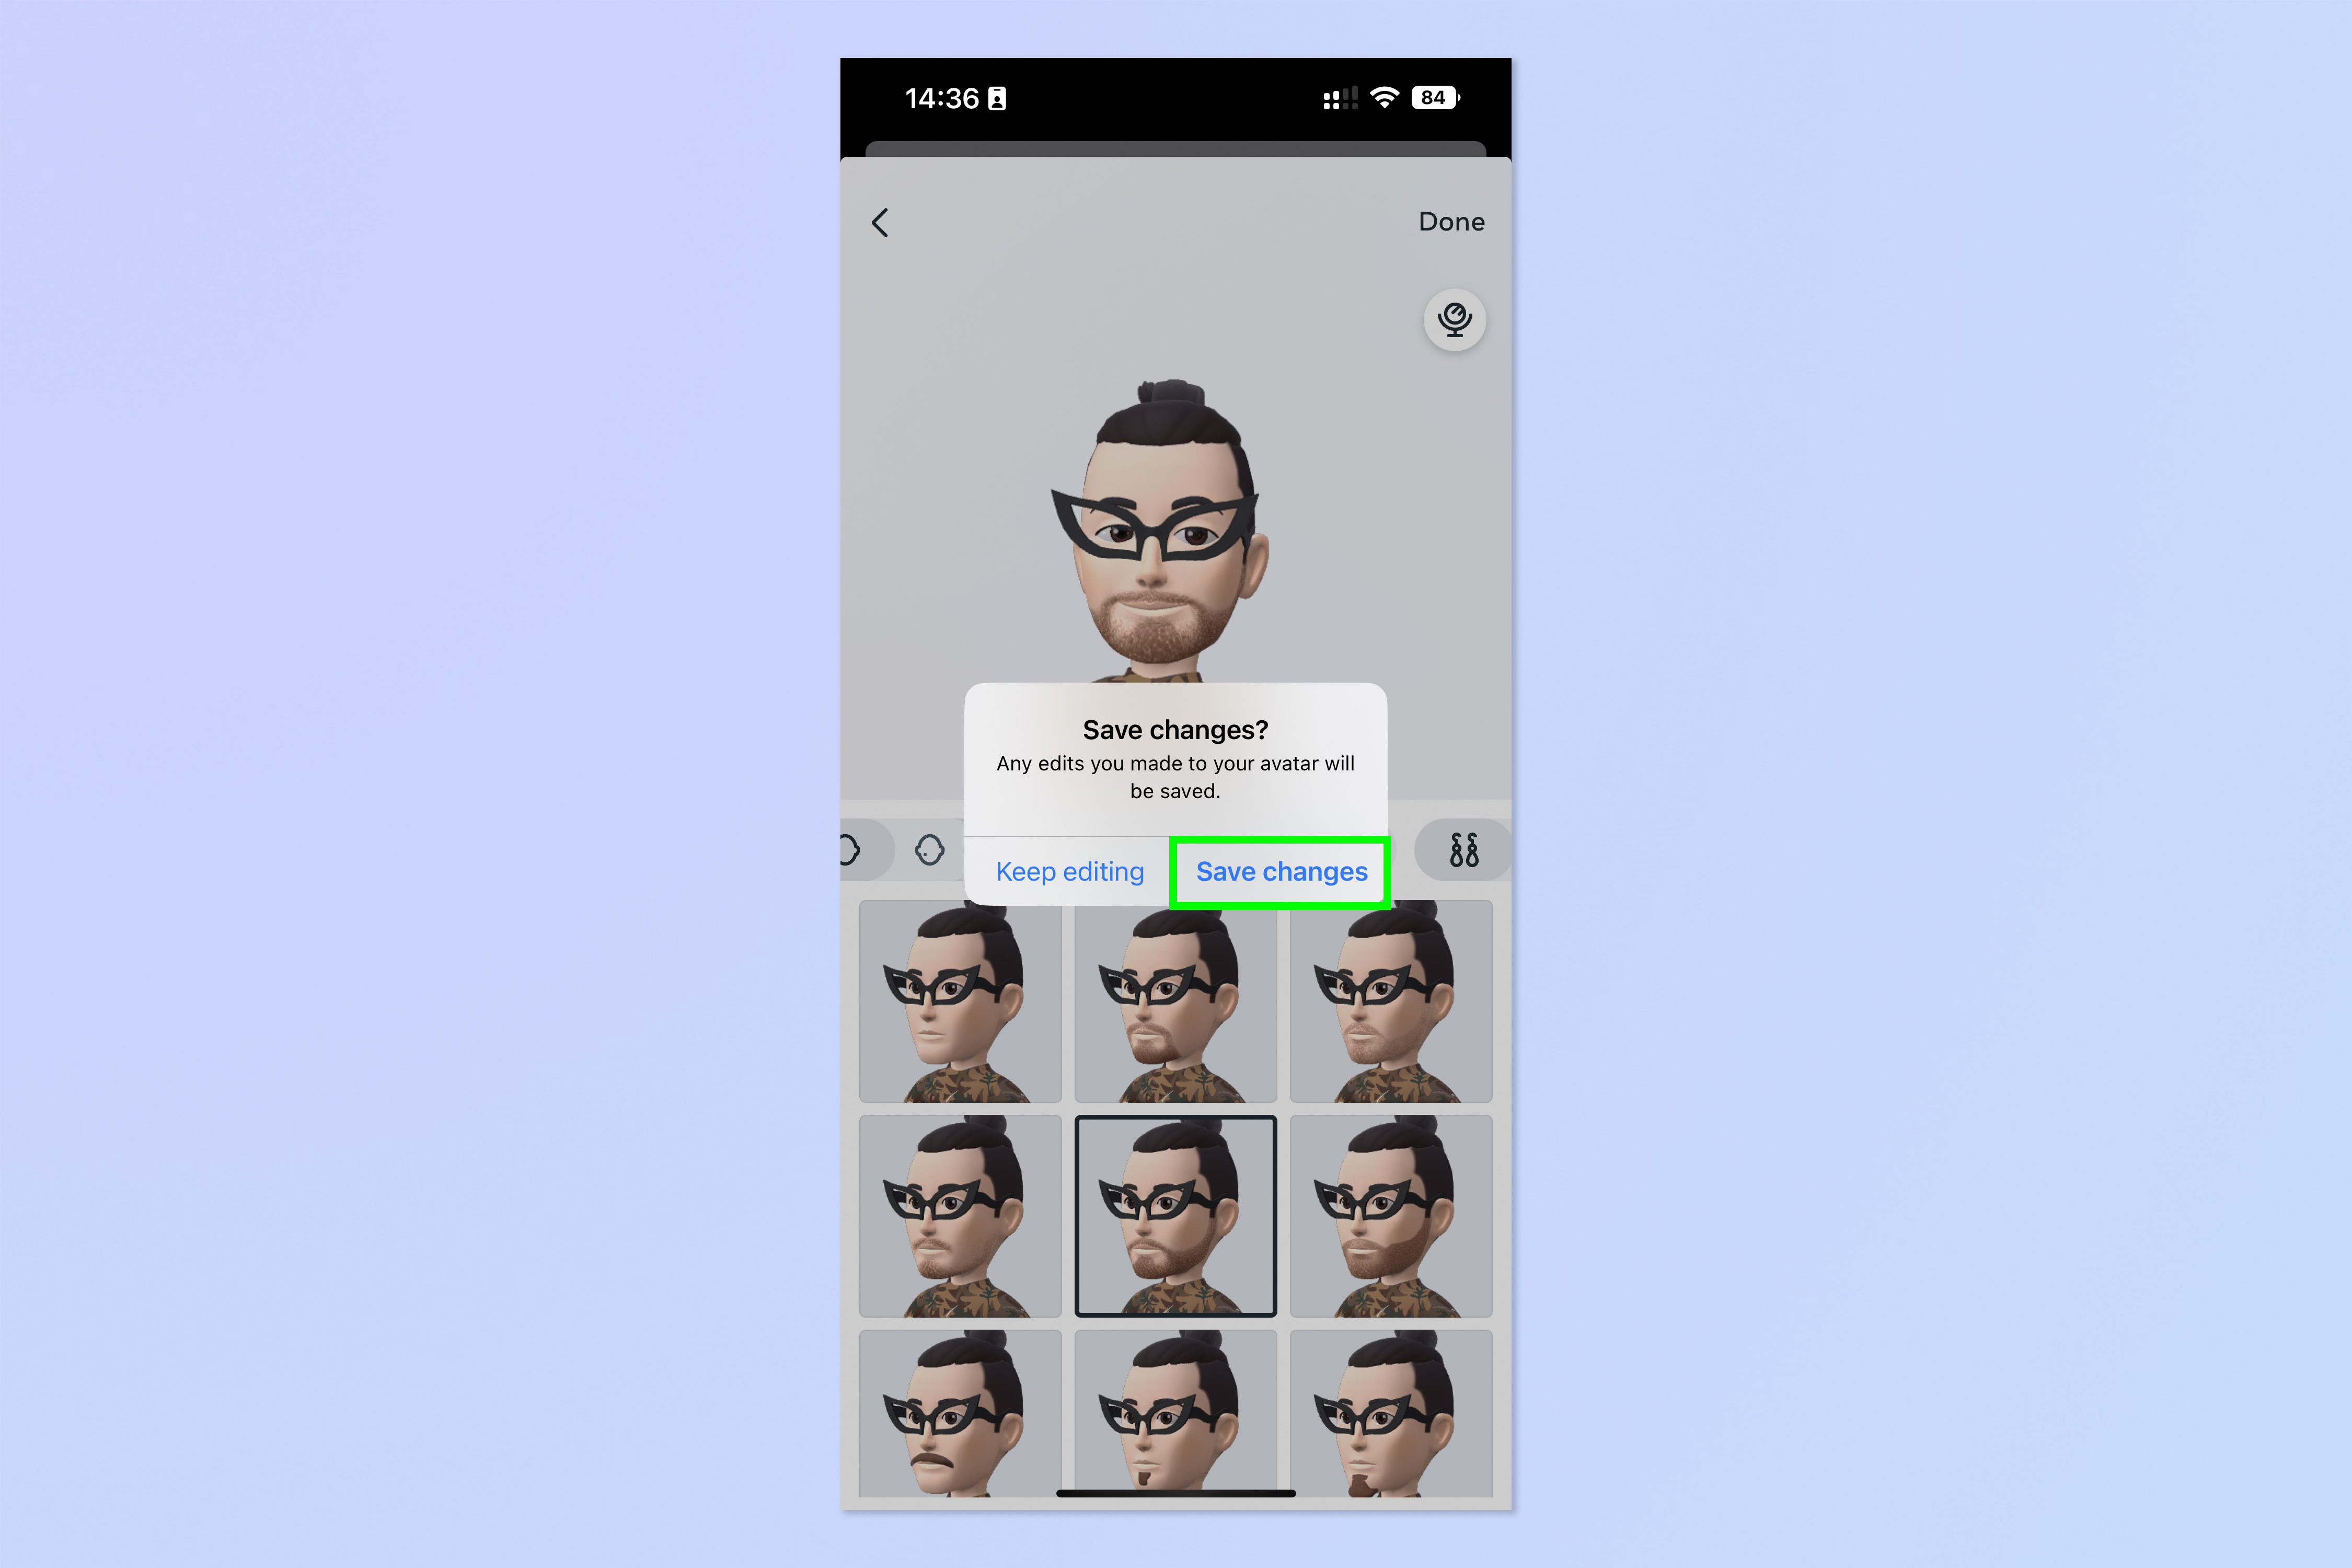 Скриншот, показывающий шаги, необходимые для создания аватара WhatsApp, установки его в качестве изображения профиля и отправки в качестве стикера.